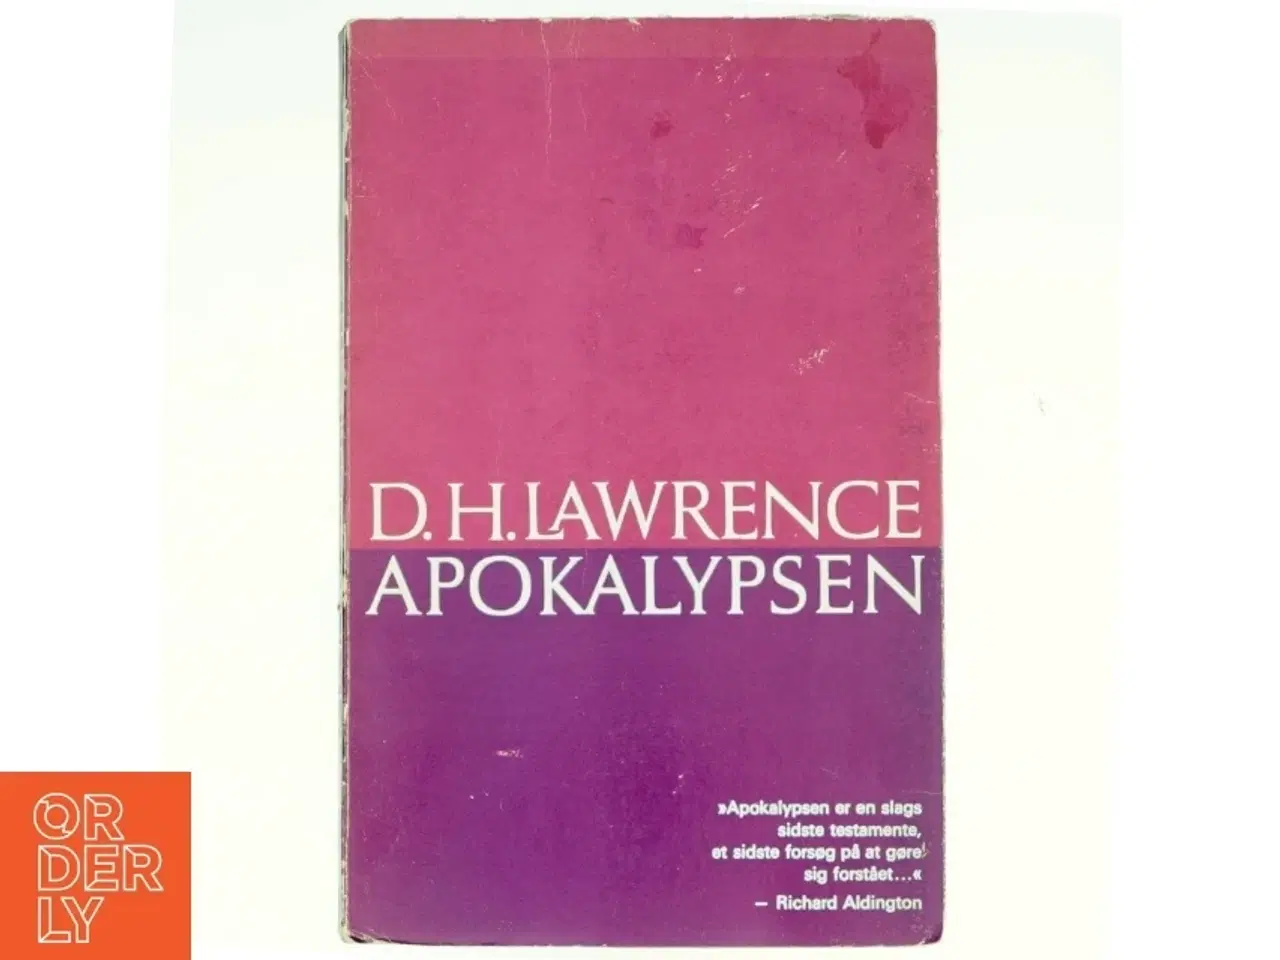 Billede 1 - Apokalypsen af D.H. Lawrence (bog)